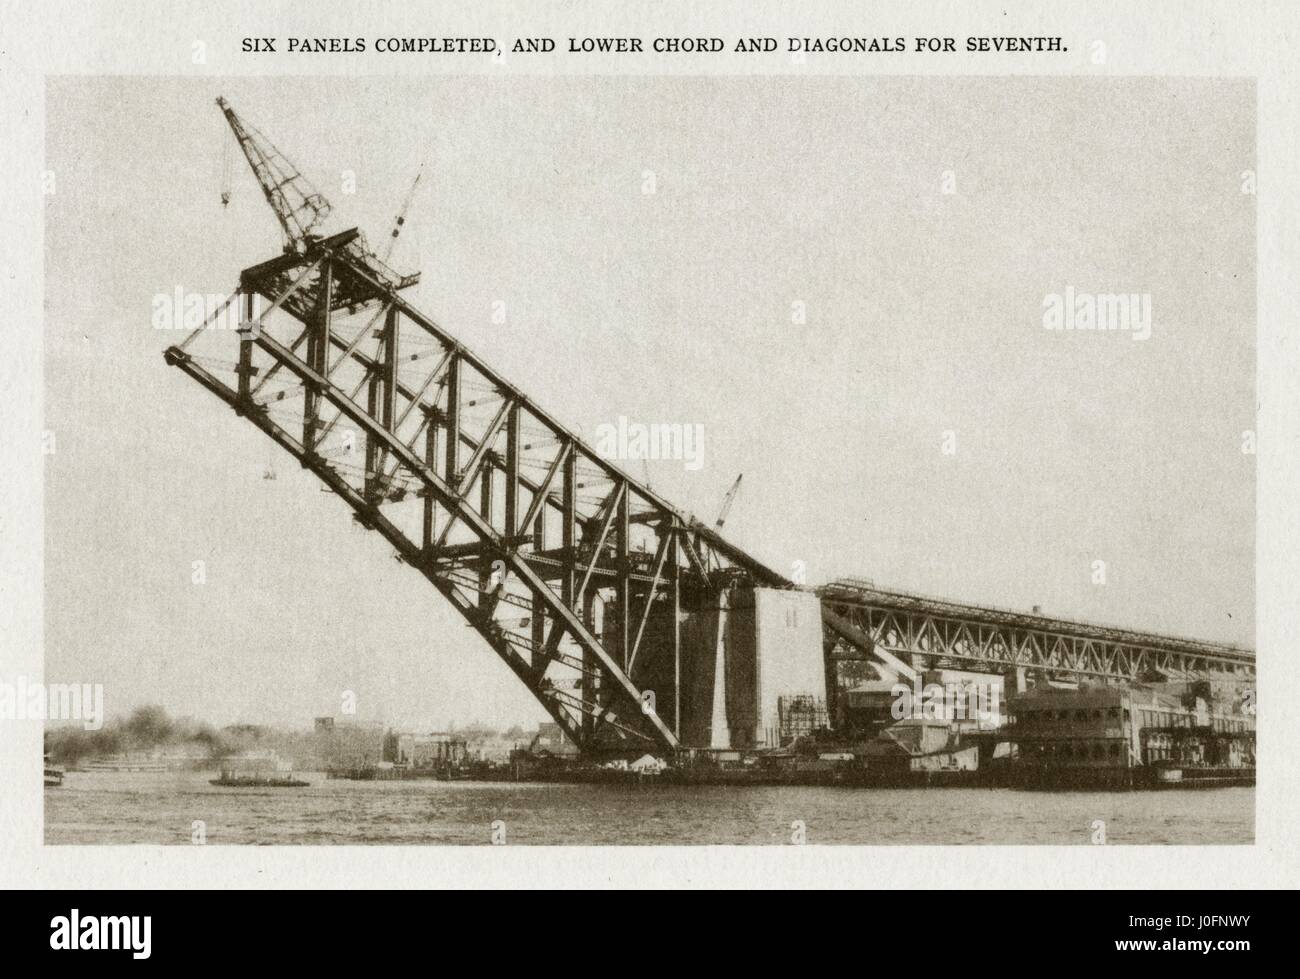 Il Ponte del Porto di Sydney in costruzione: 6 pannelli completato e corda inferiore e diagonali per 7 Foto Stock